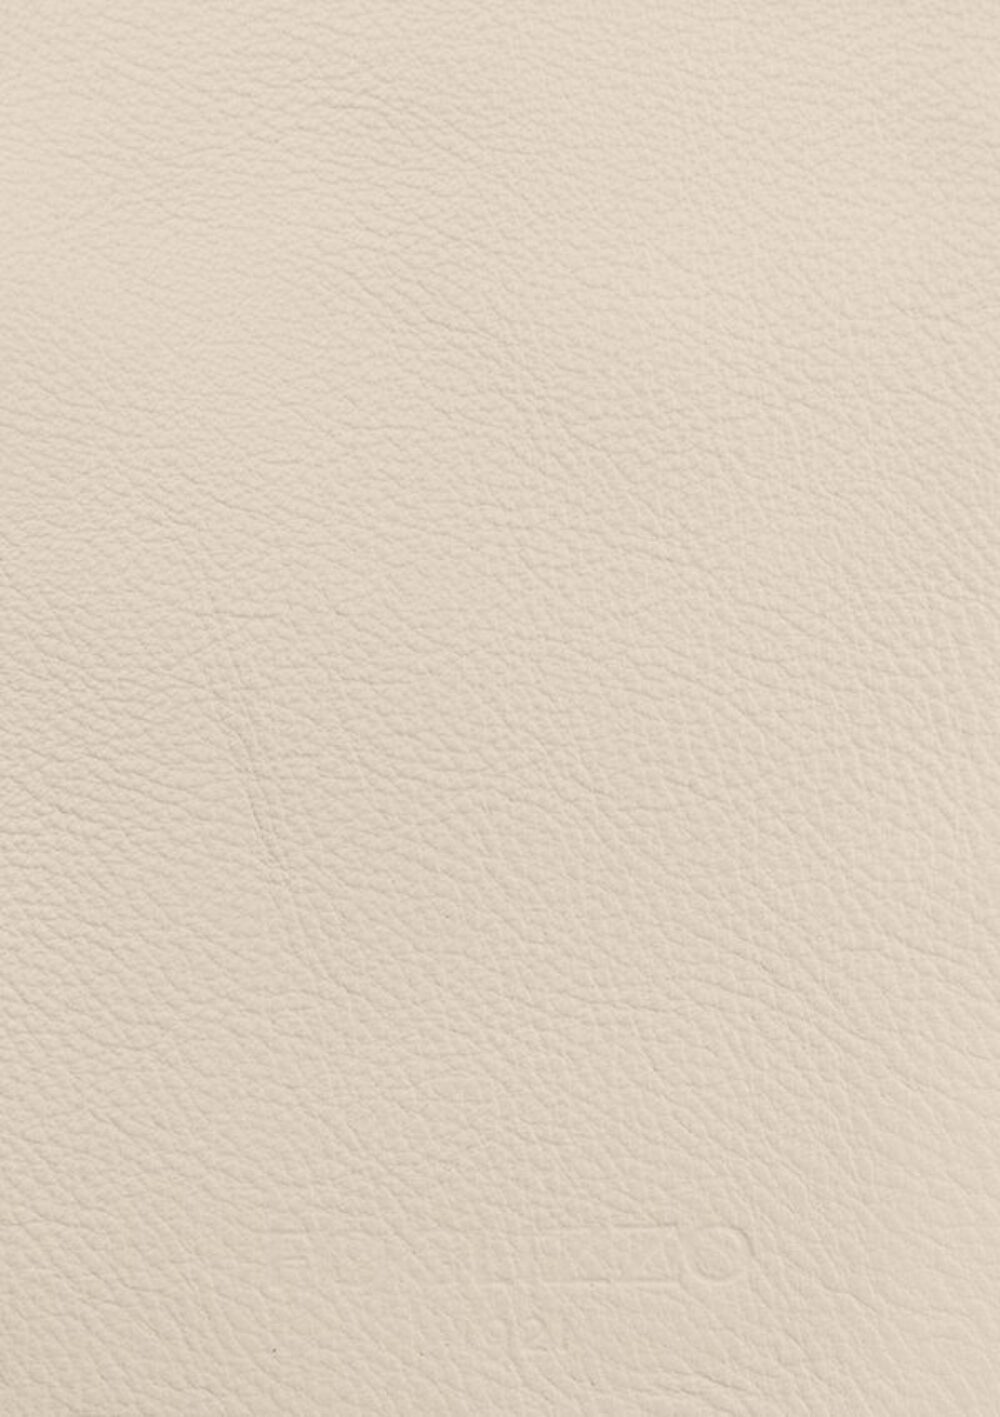 Diseño de lujo y alfombras de alta gama hechas a medida • Almond White Jade